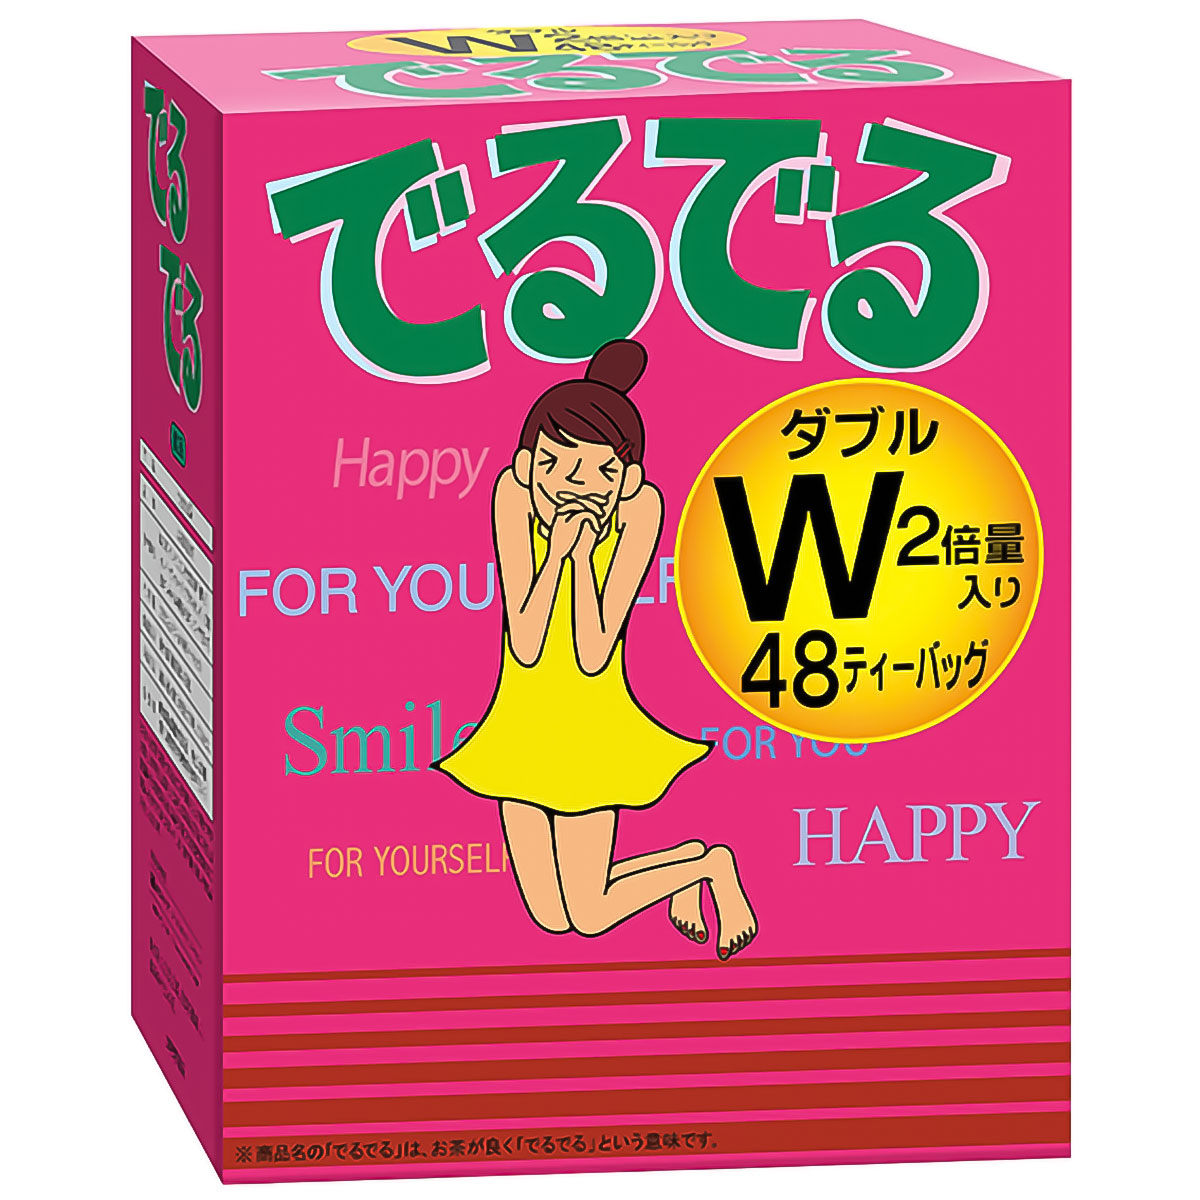 昭和製薬 昭和製薬 でるでるW 7.4g 48包入 × 1箱 健康茶の商品画像